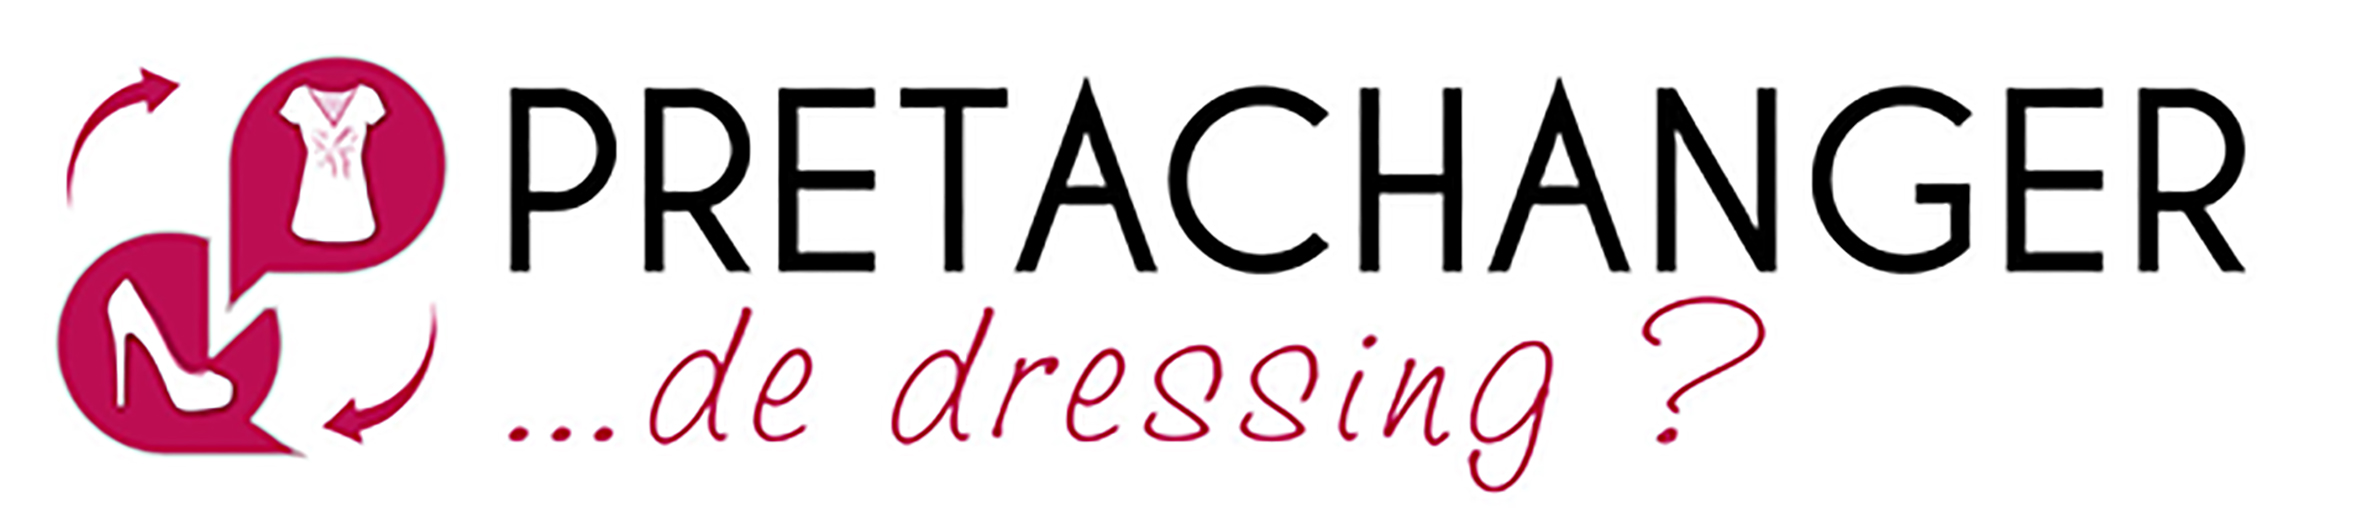 logo_pretachanger